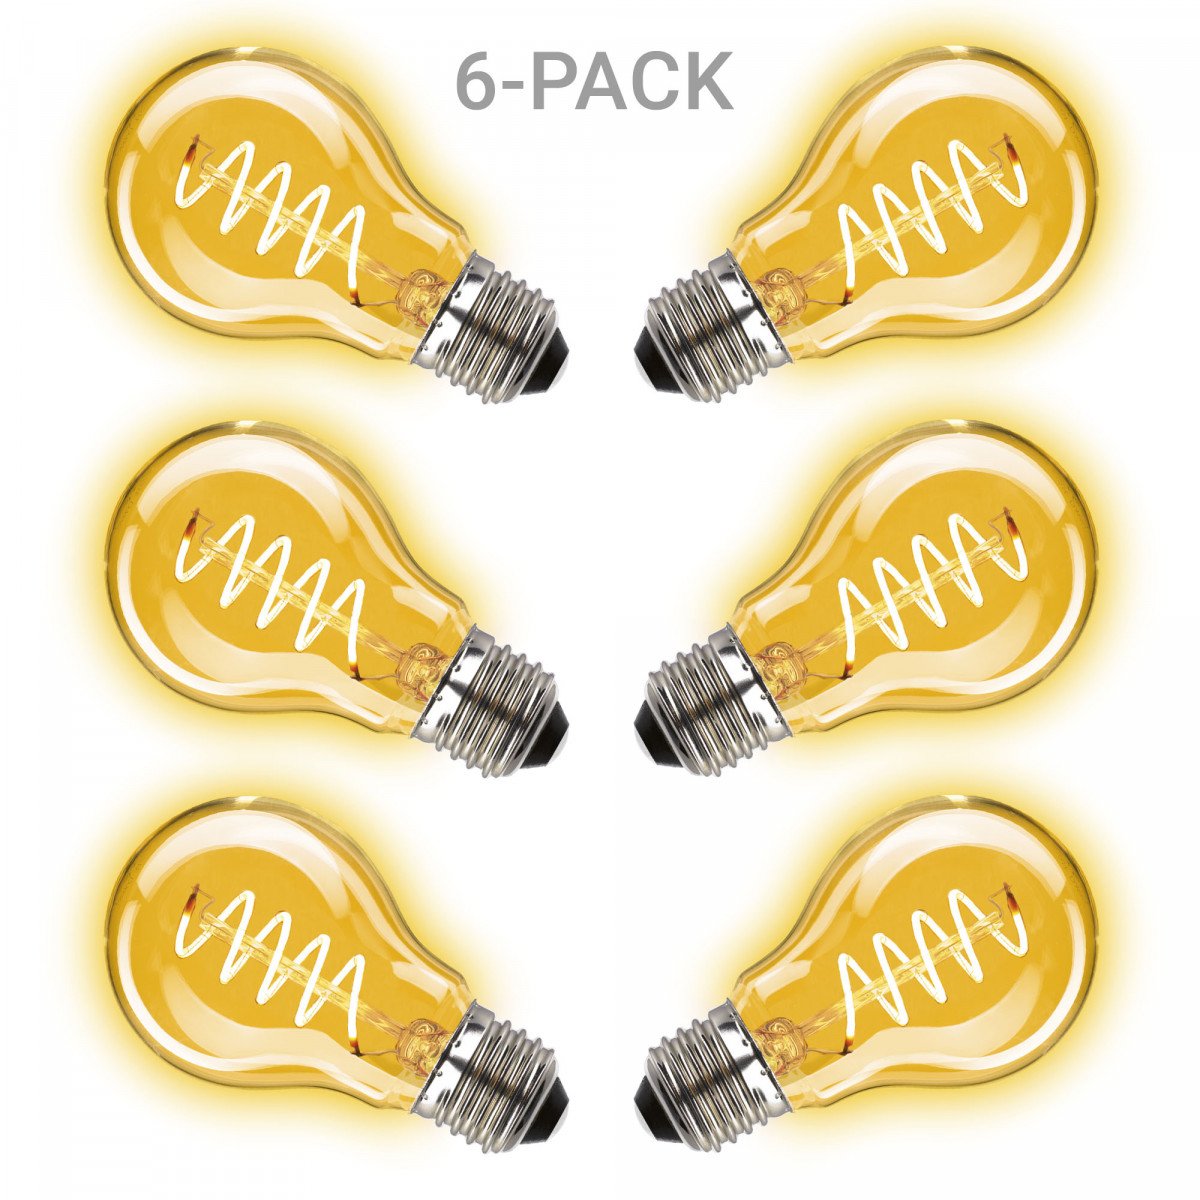 Pack de 6 ampoules Classic Curl LED 2W - 105 Lumen (6 x 3858) de KS Lighting | Nostalux.fr